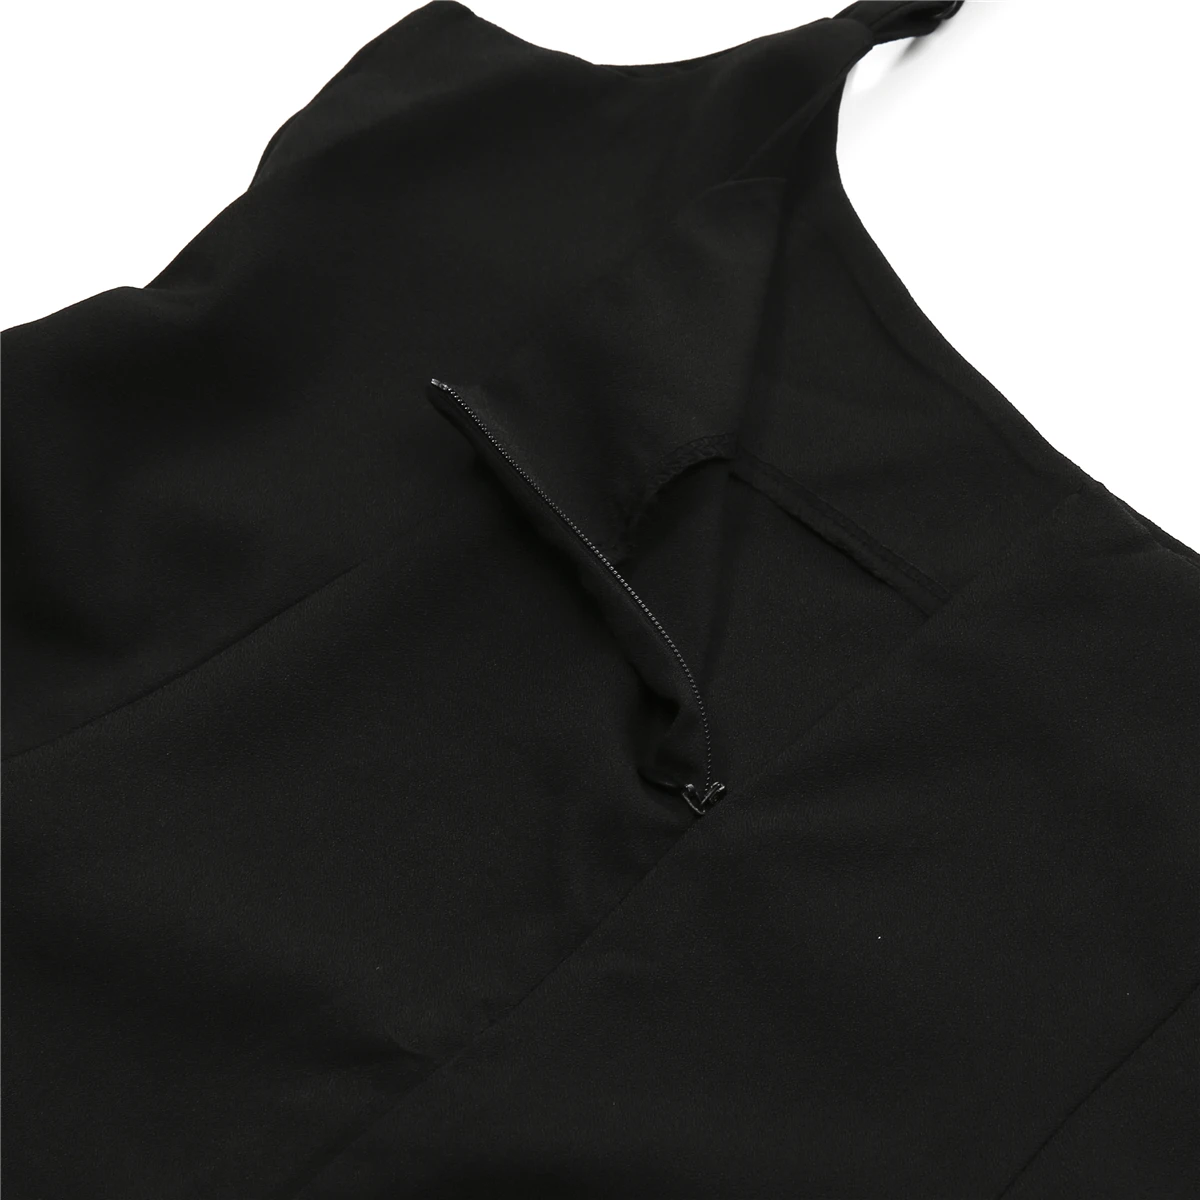 Юбка плиссированная женская черная с высокой талией на подтяжках S-2XL | Женская